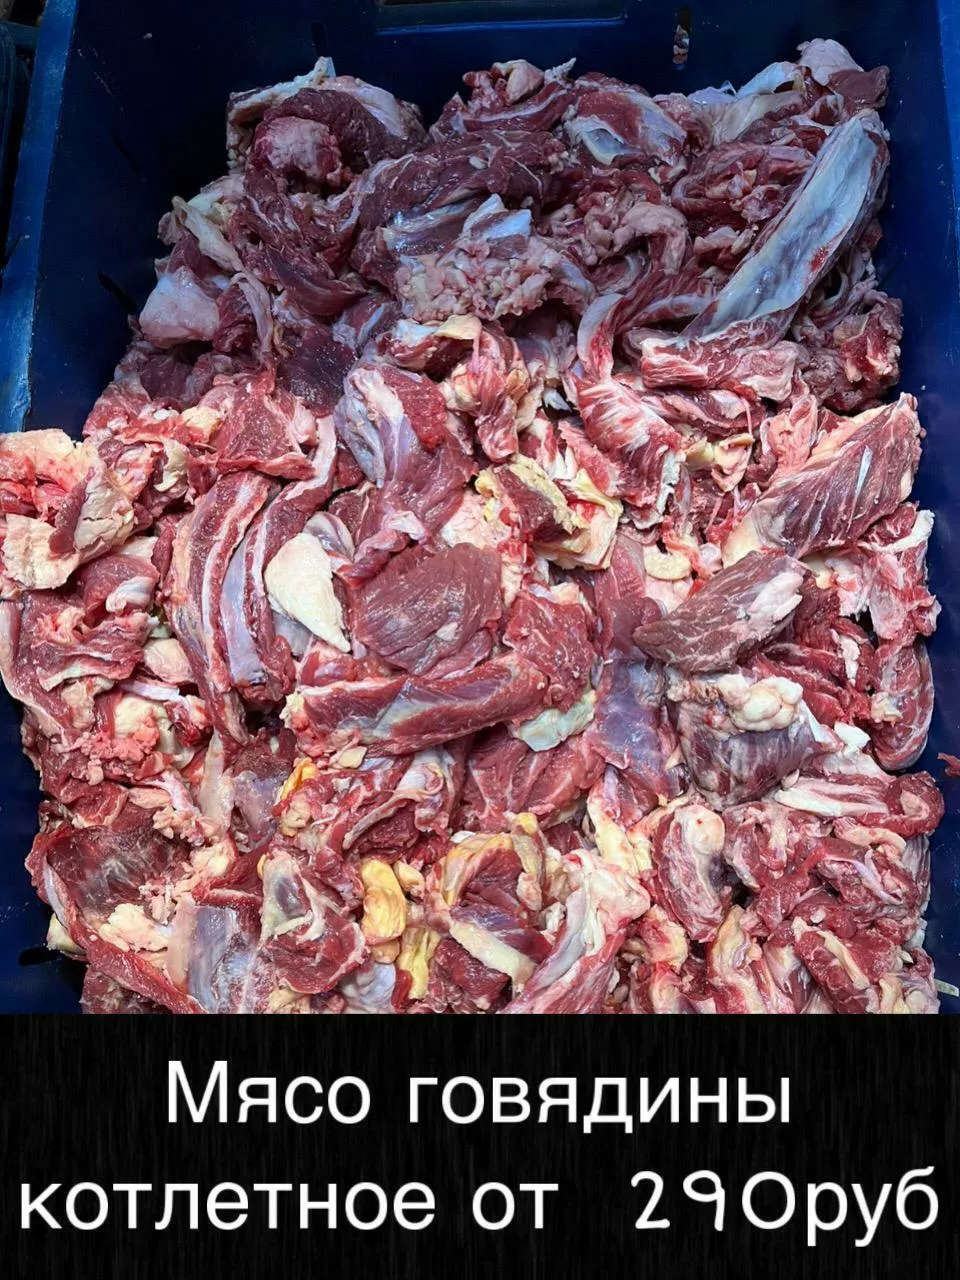 мясо говядина доставим до вашего региона в Улане-Удэ 5